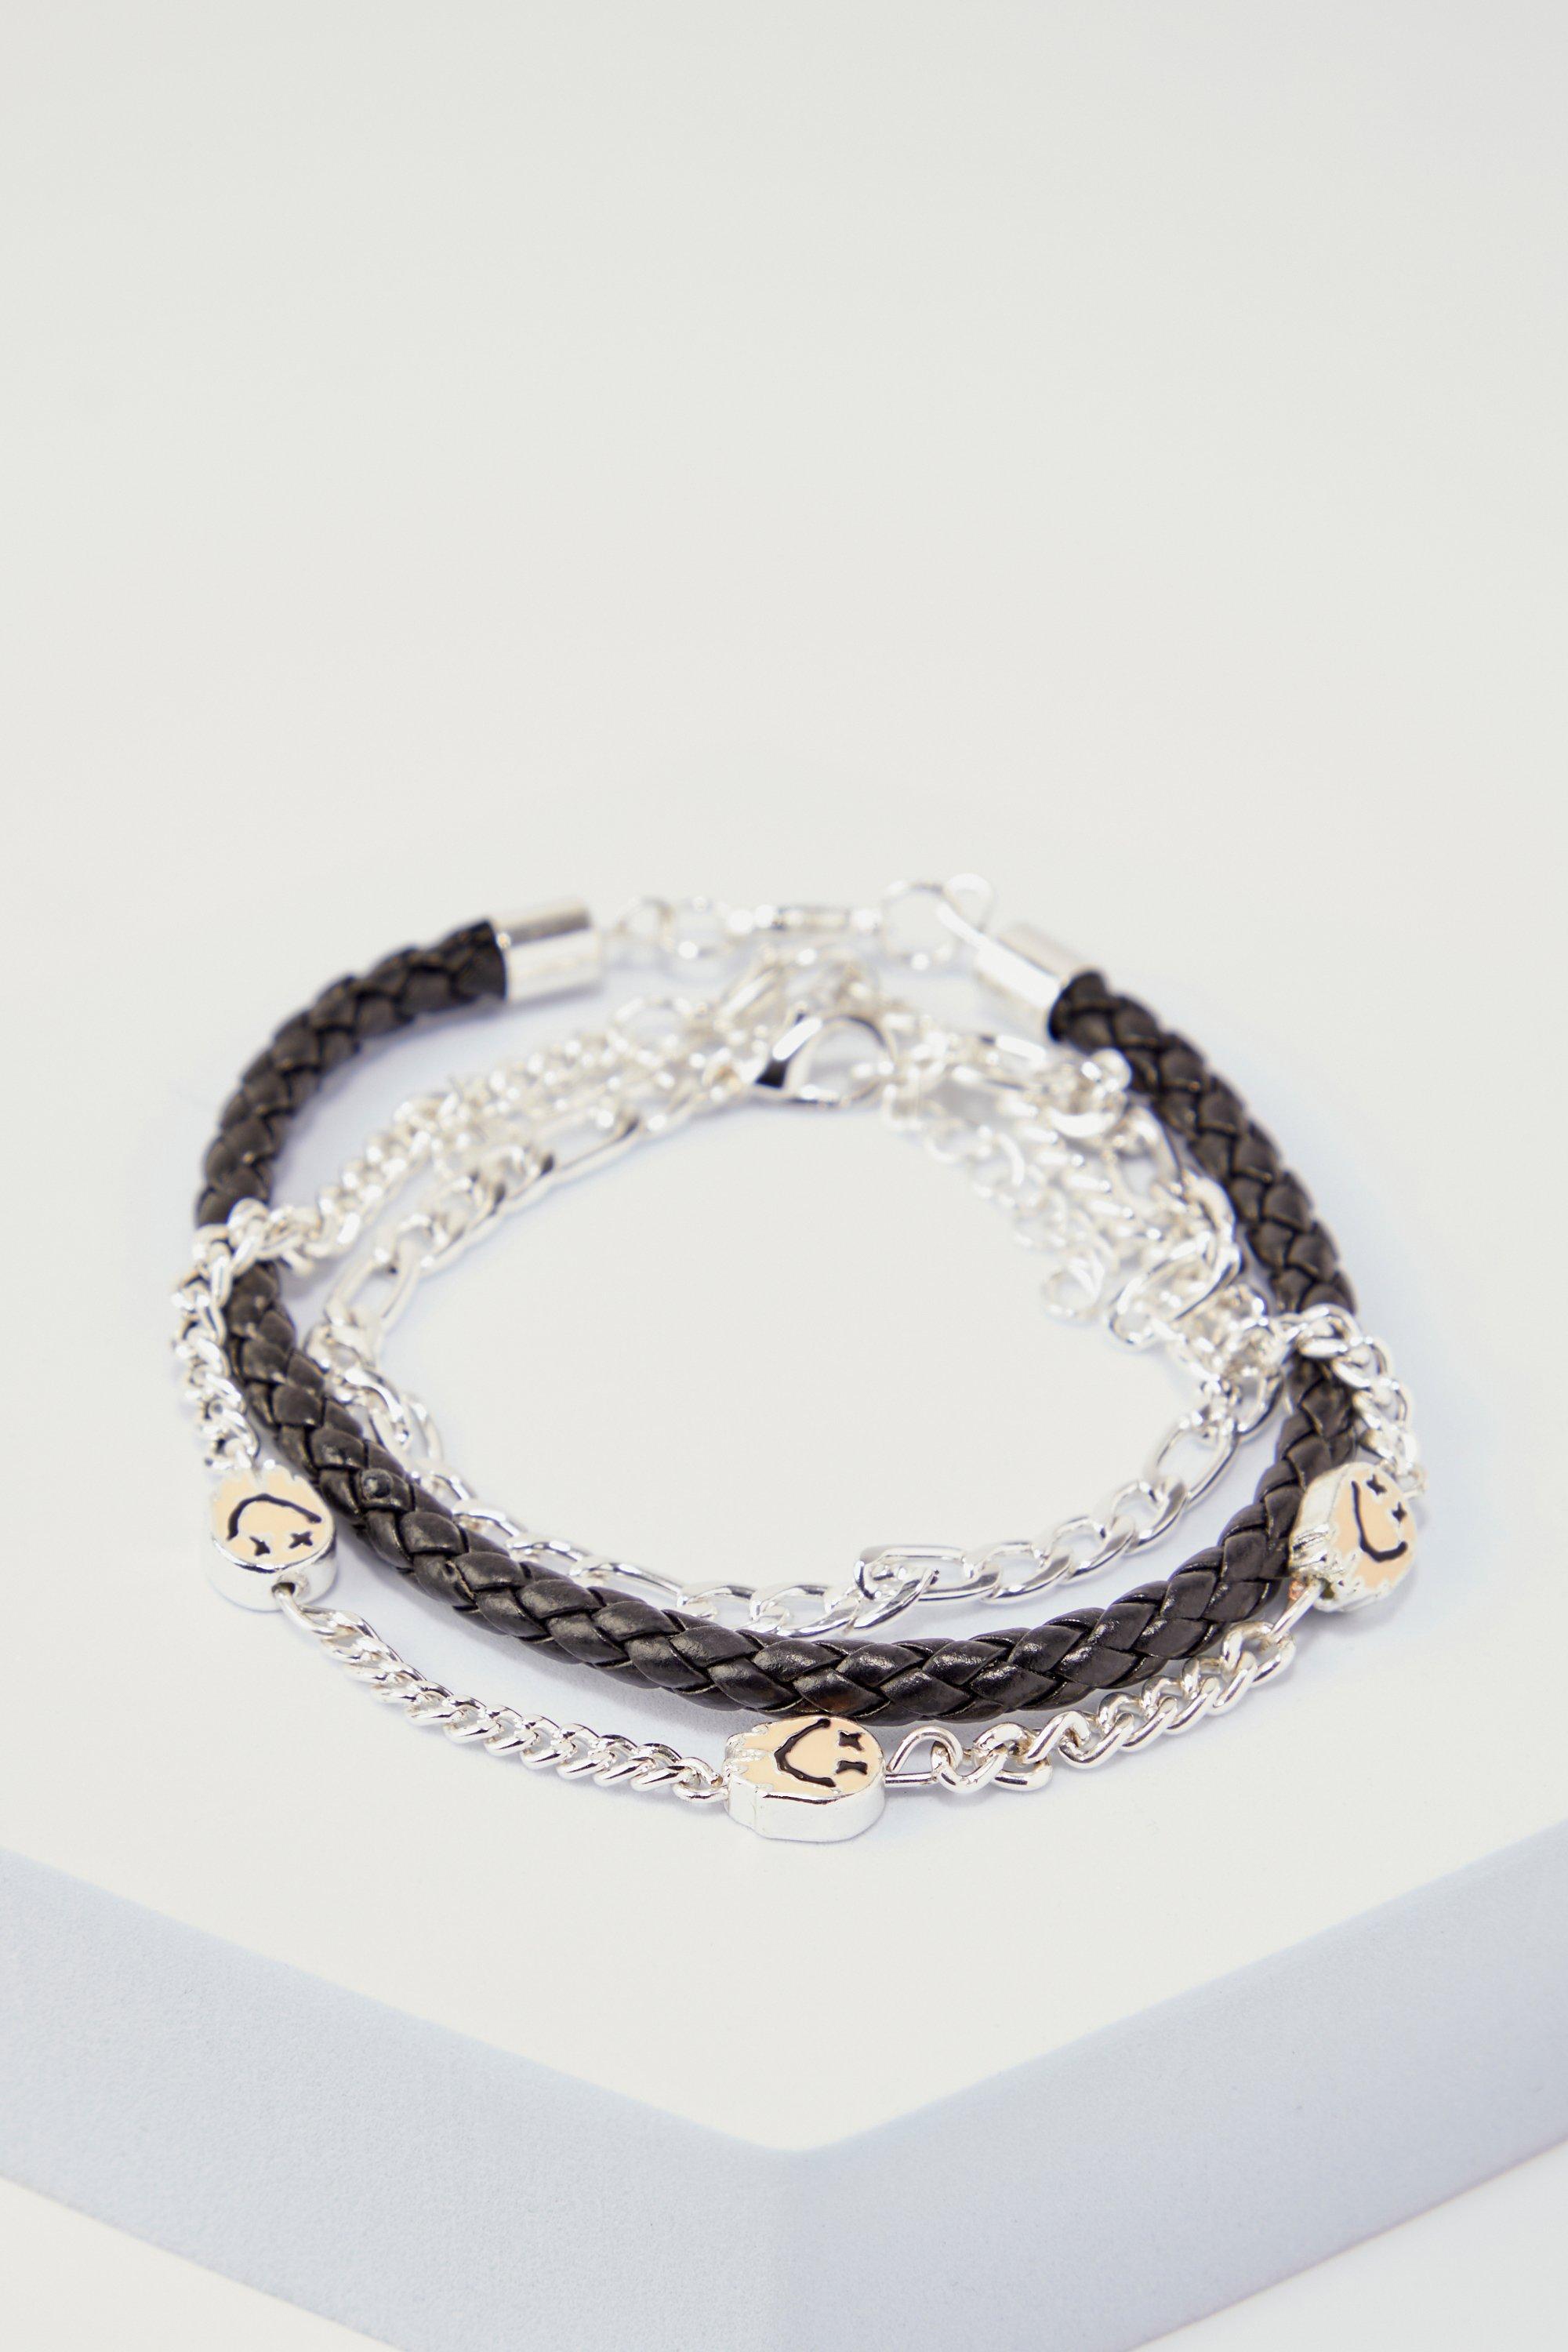 lot de 2 bracelets perlés homme - argent - one size, argent